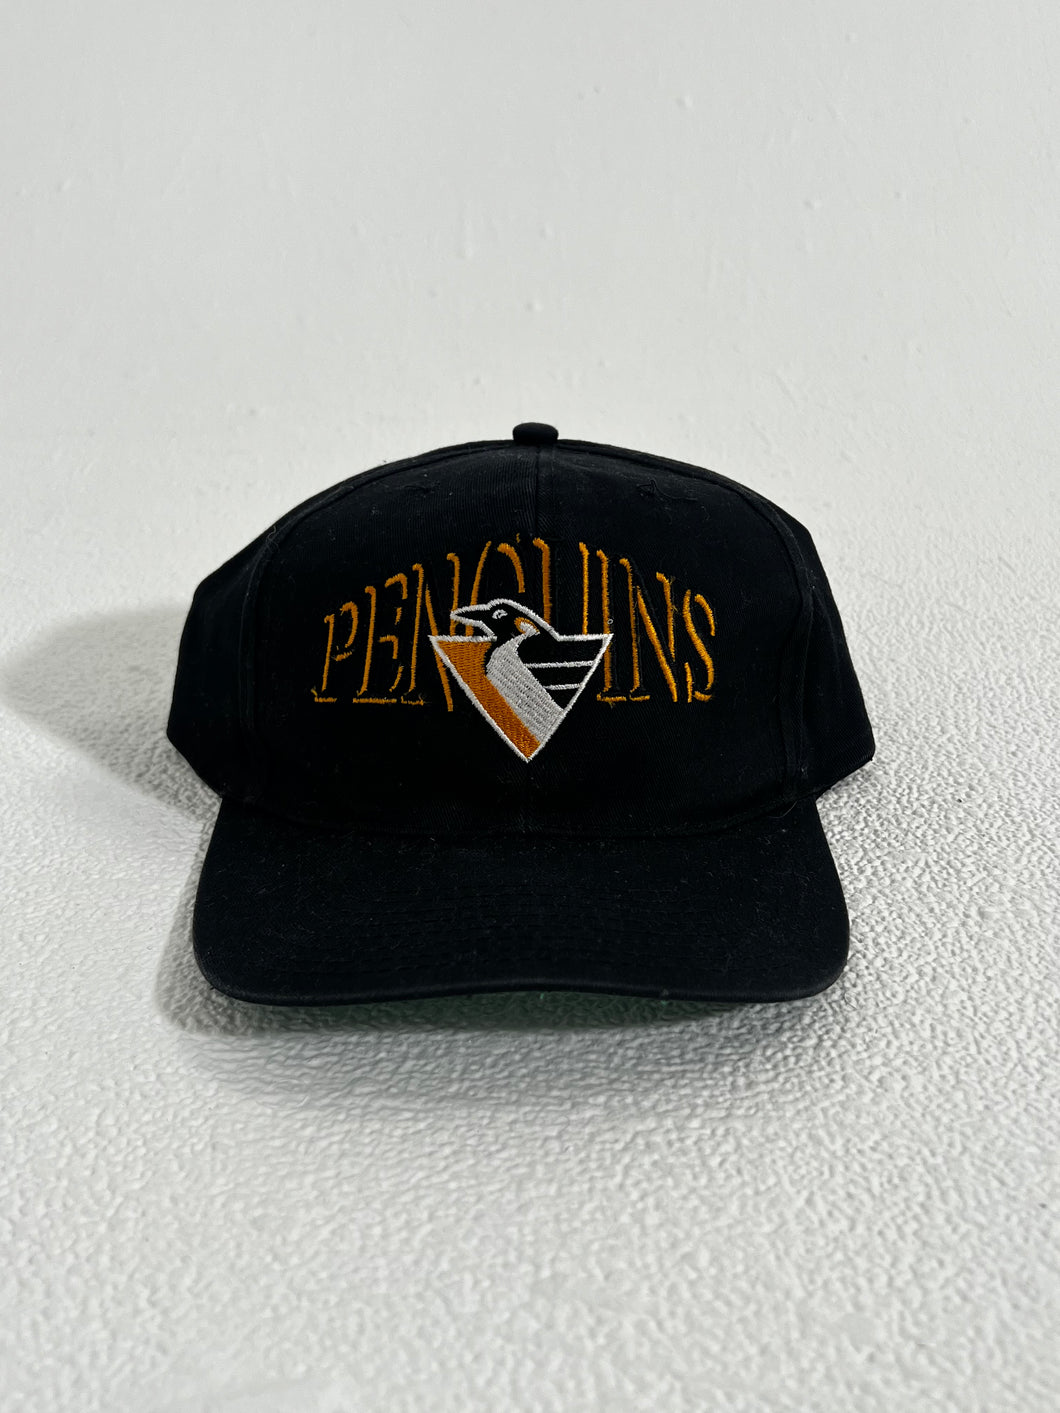 RS Vintage Pittsburgh Penguins Snapback Hat